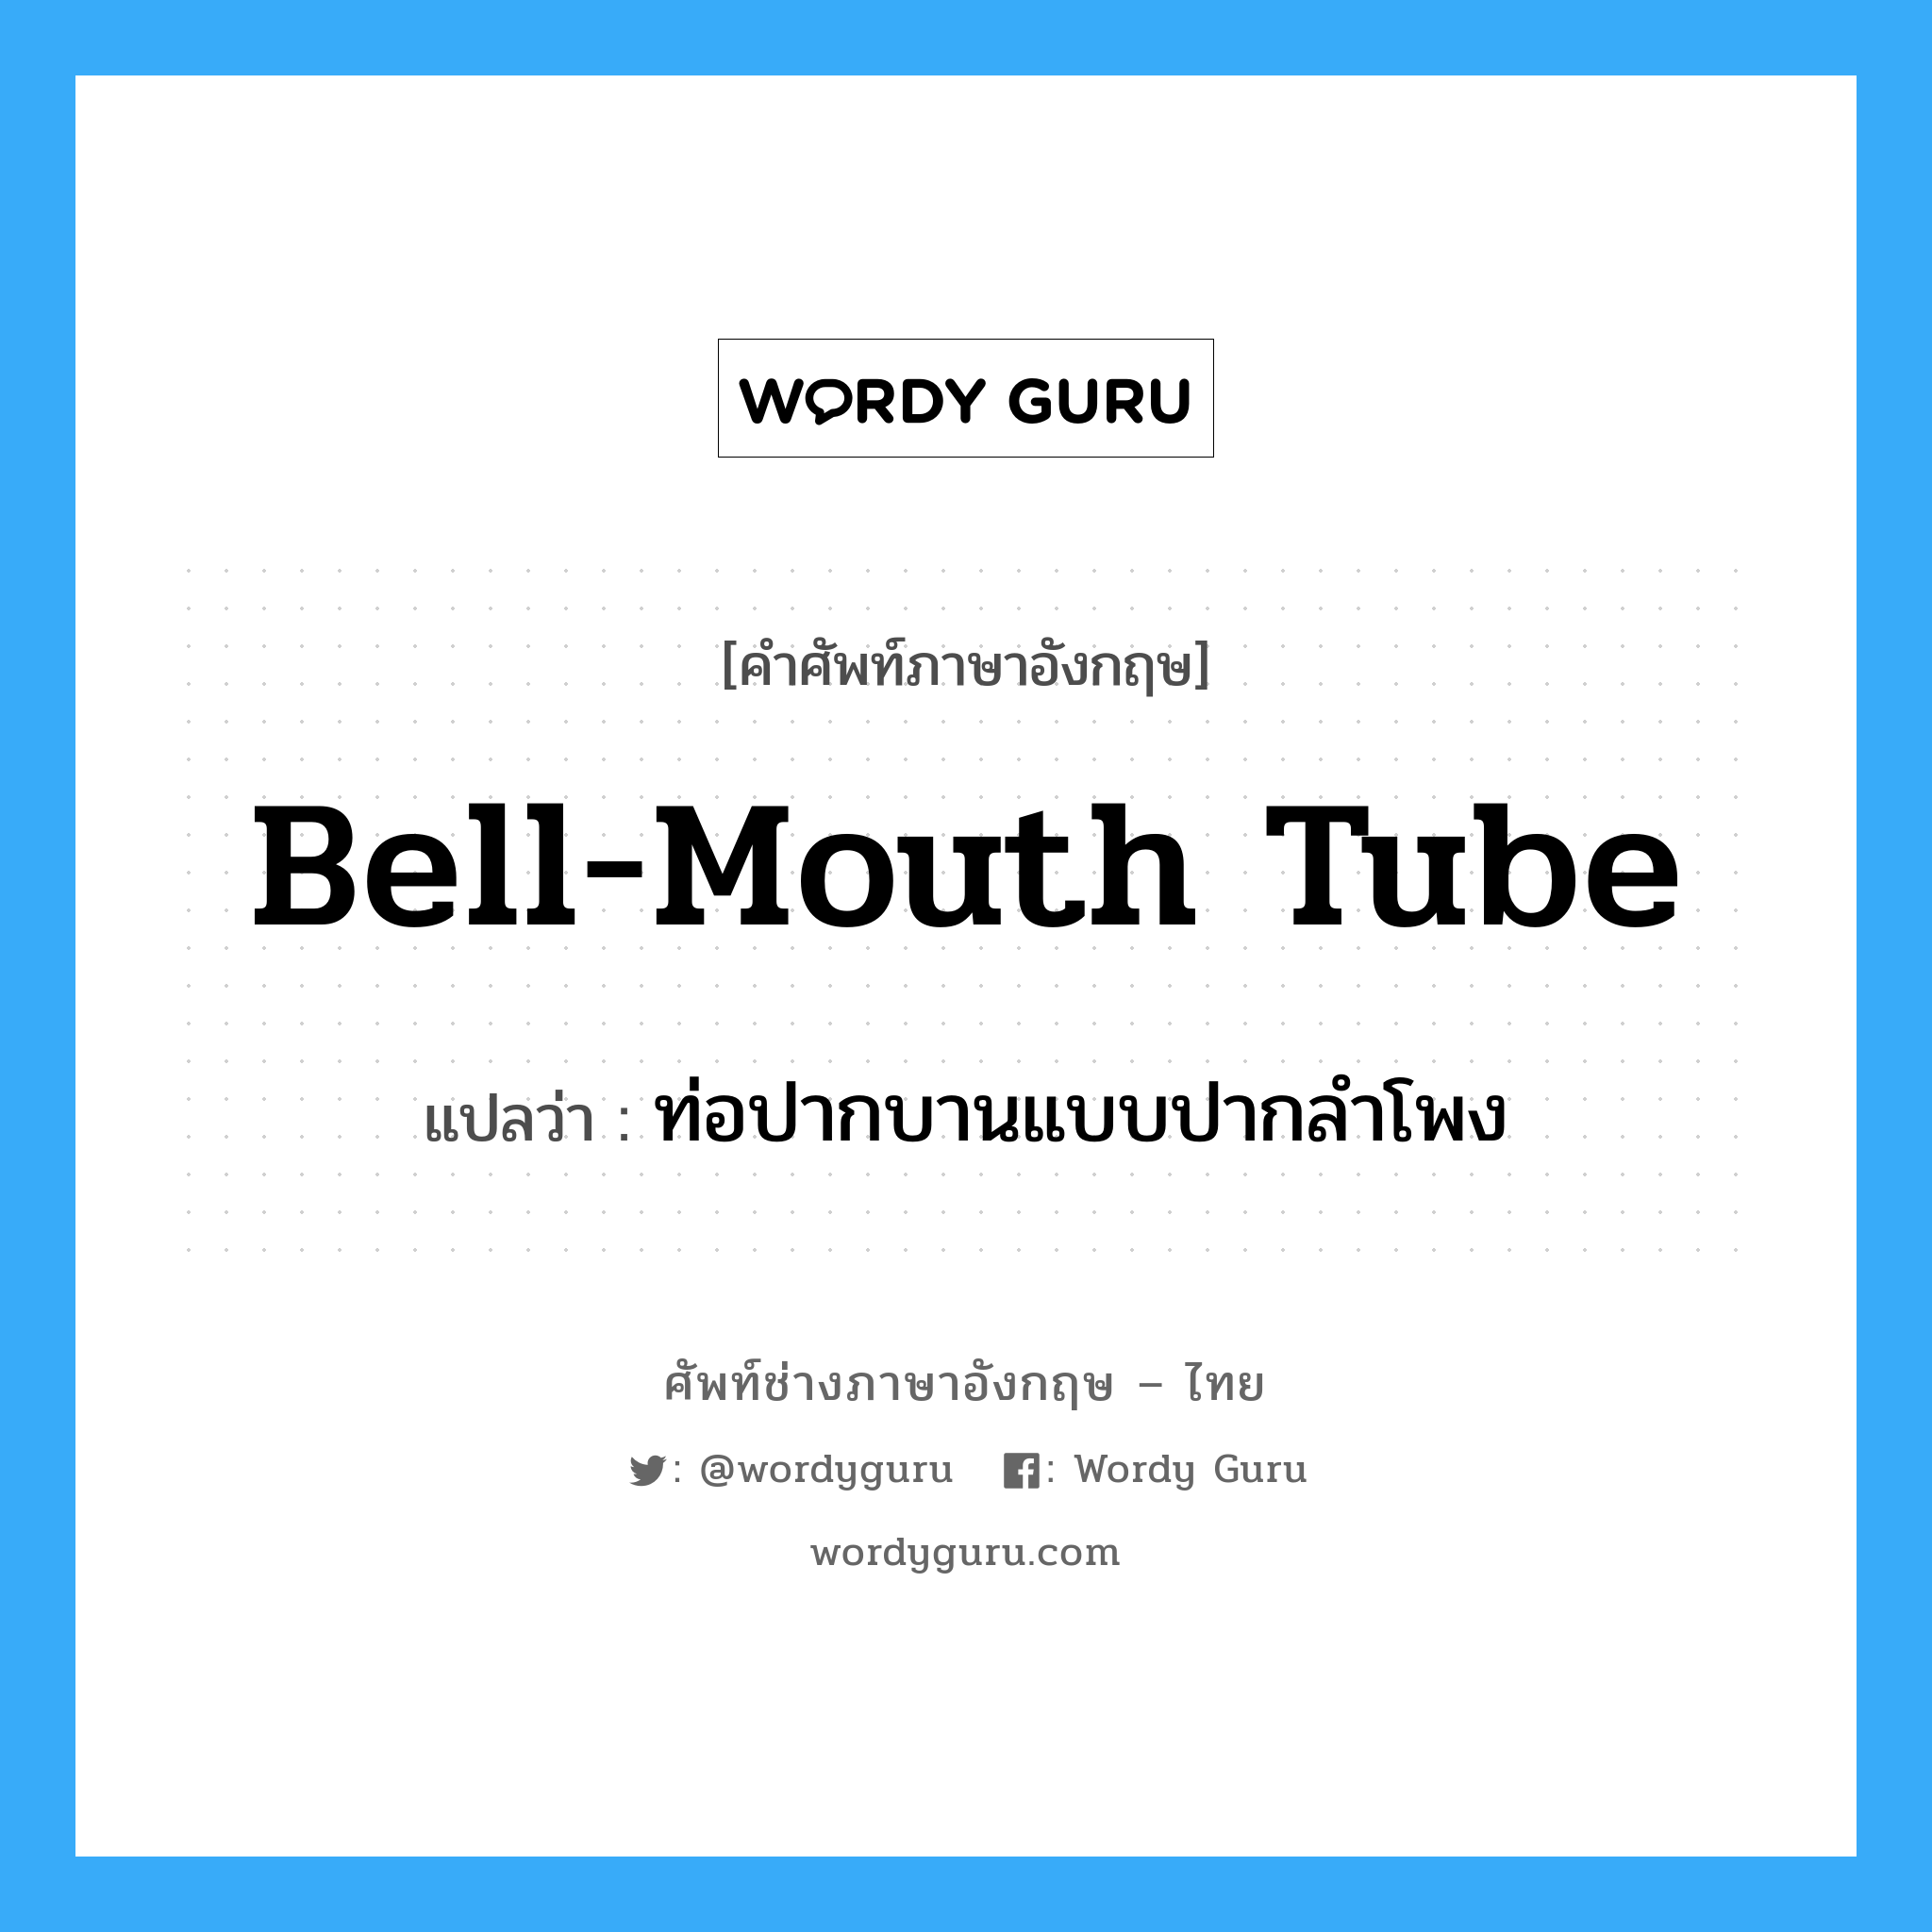 bell-mouth tube แปลว่า?, คำศัพท์ช่างภาษาอังกฤษ - ไทย bell-mouth tube คำศัพท์ภาษาอังกฤษ bell-mouth tube แปลว่า ท่อปากบานแบบปากลำโพง